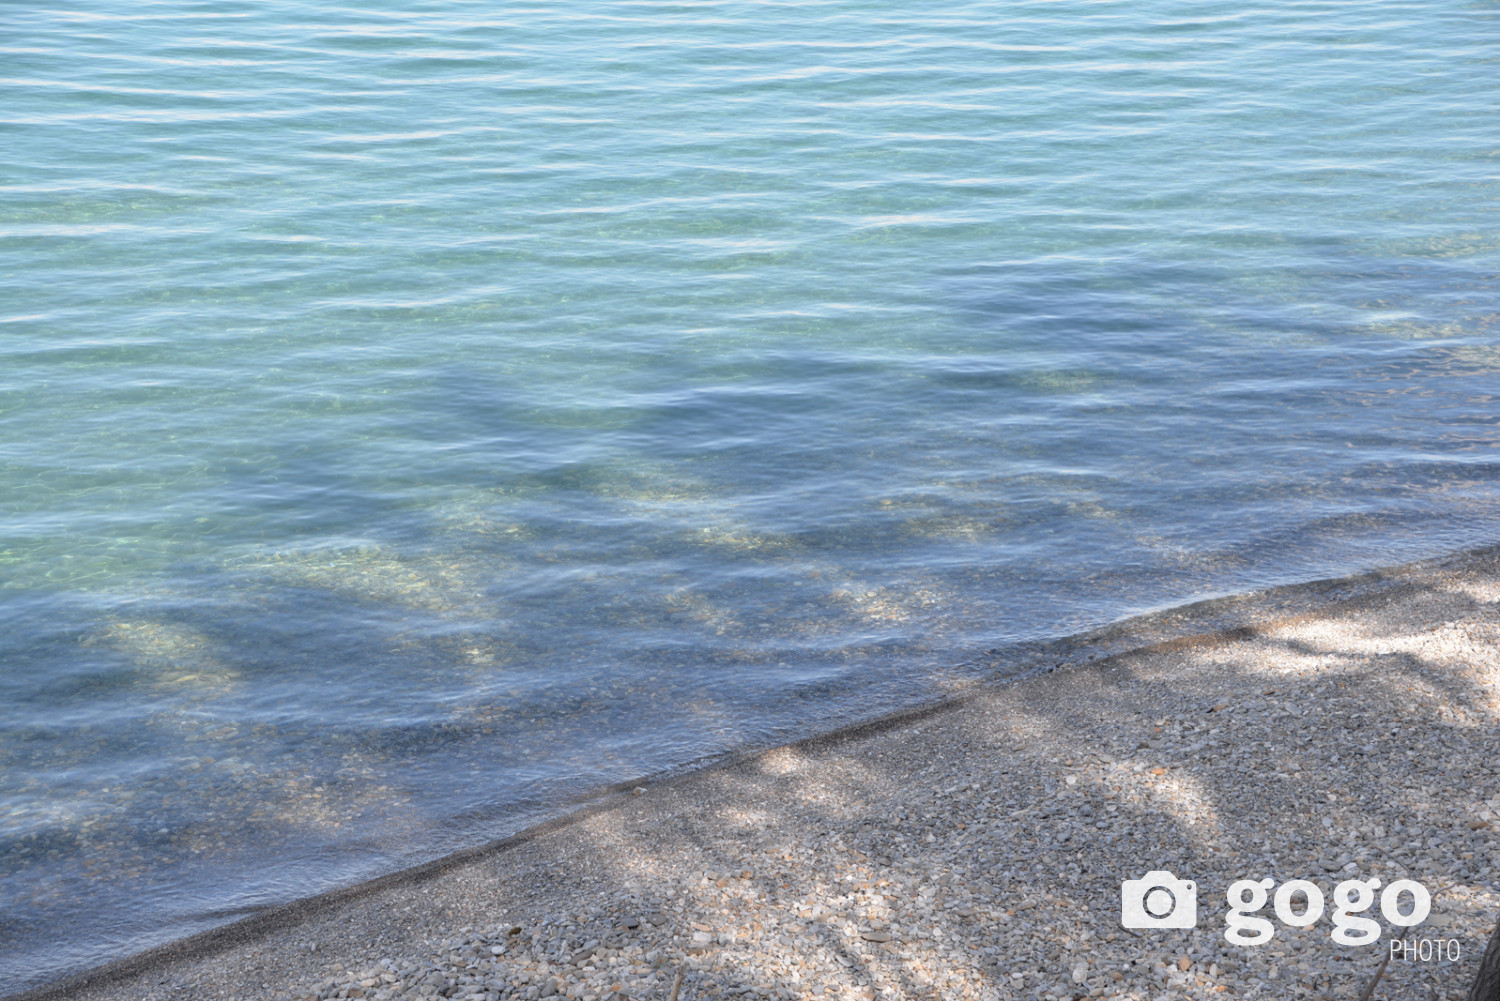 Тунгалаг, цэнгэг устай тул ёроолын чулуу нь туяаран харагдаж, далайн мандлын олон өнгийг үүсгэдэг